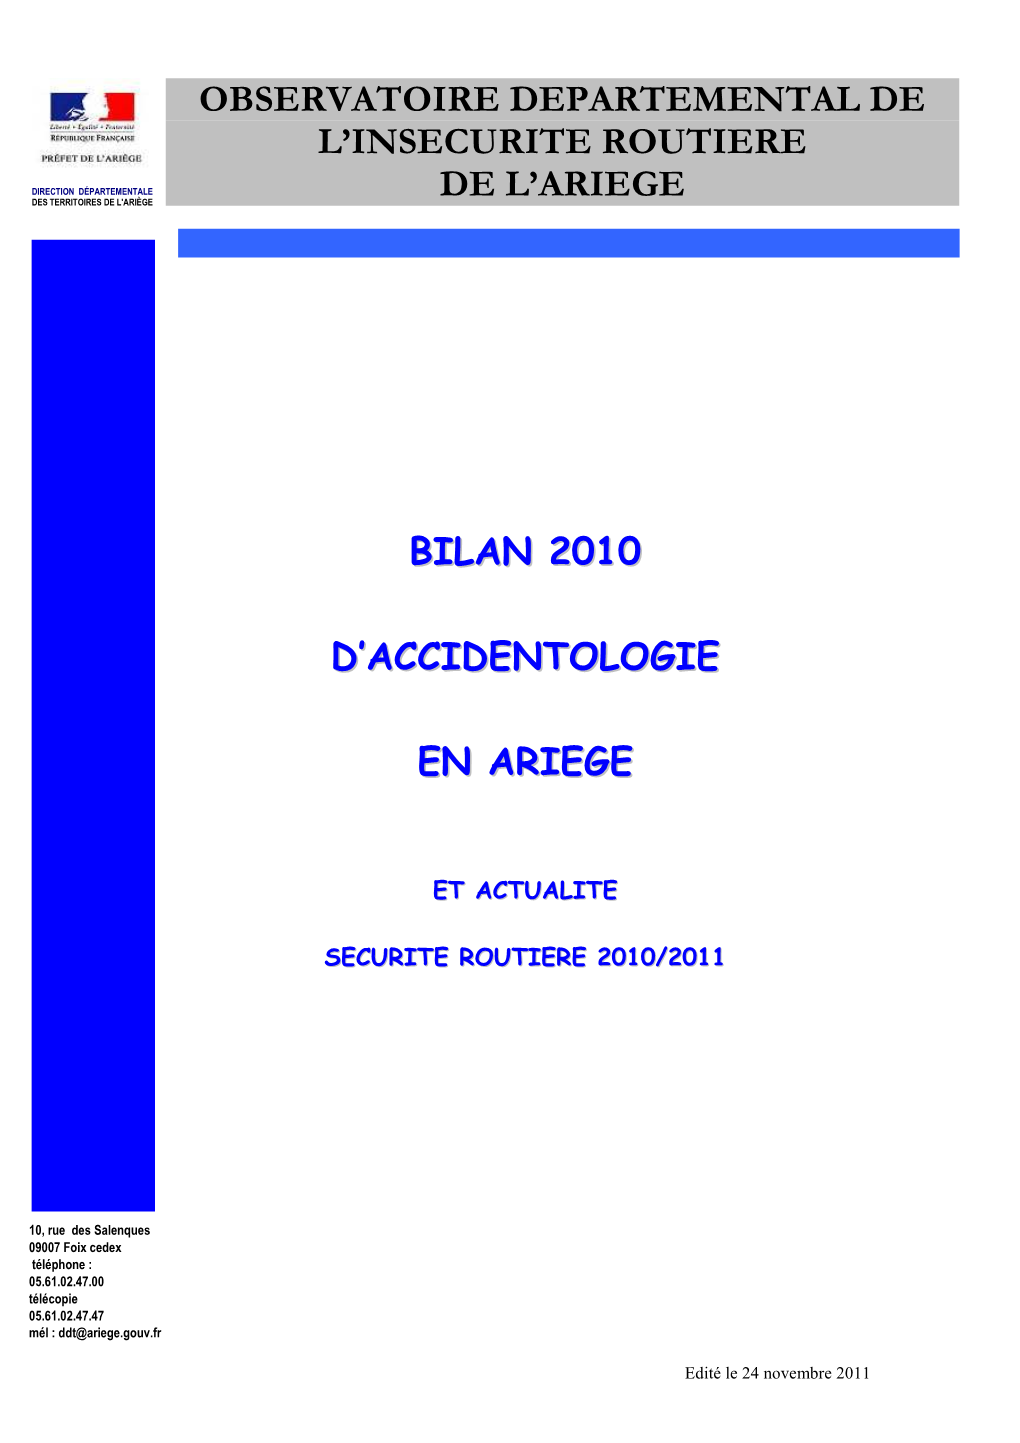 Observatoire Departemental De L'insecurite Routiere De L'ariege Bilan 2010 D'accidentologie En Ariege